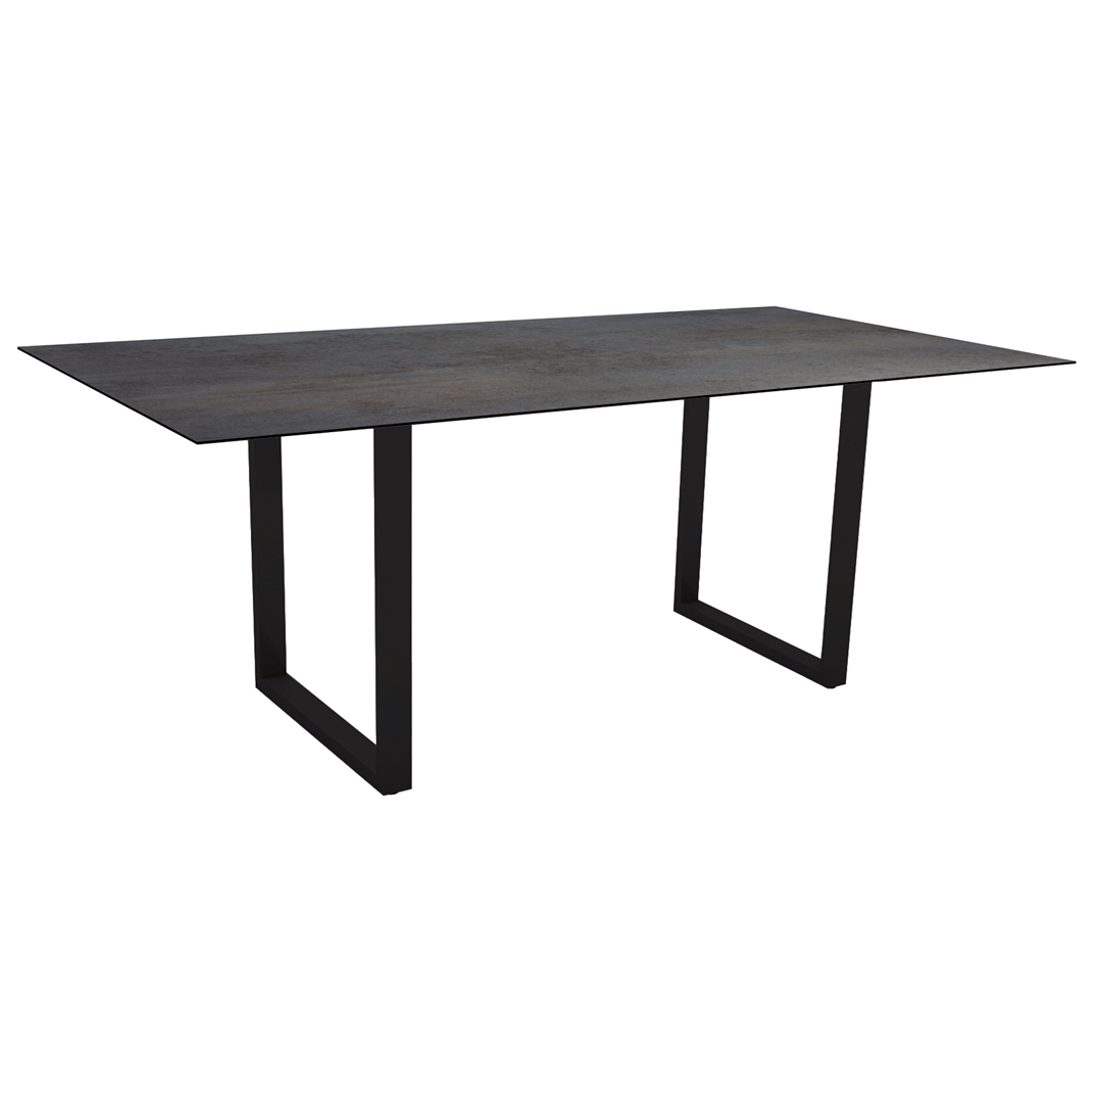 Stern Kufentisch, Gestell schwarz matt, Tischplatte HPL Nitro, Tischgröße: 200x100 cm